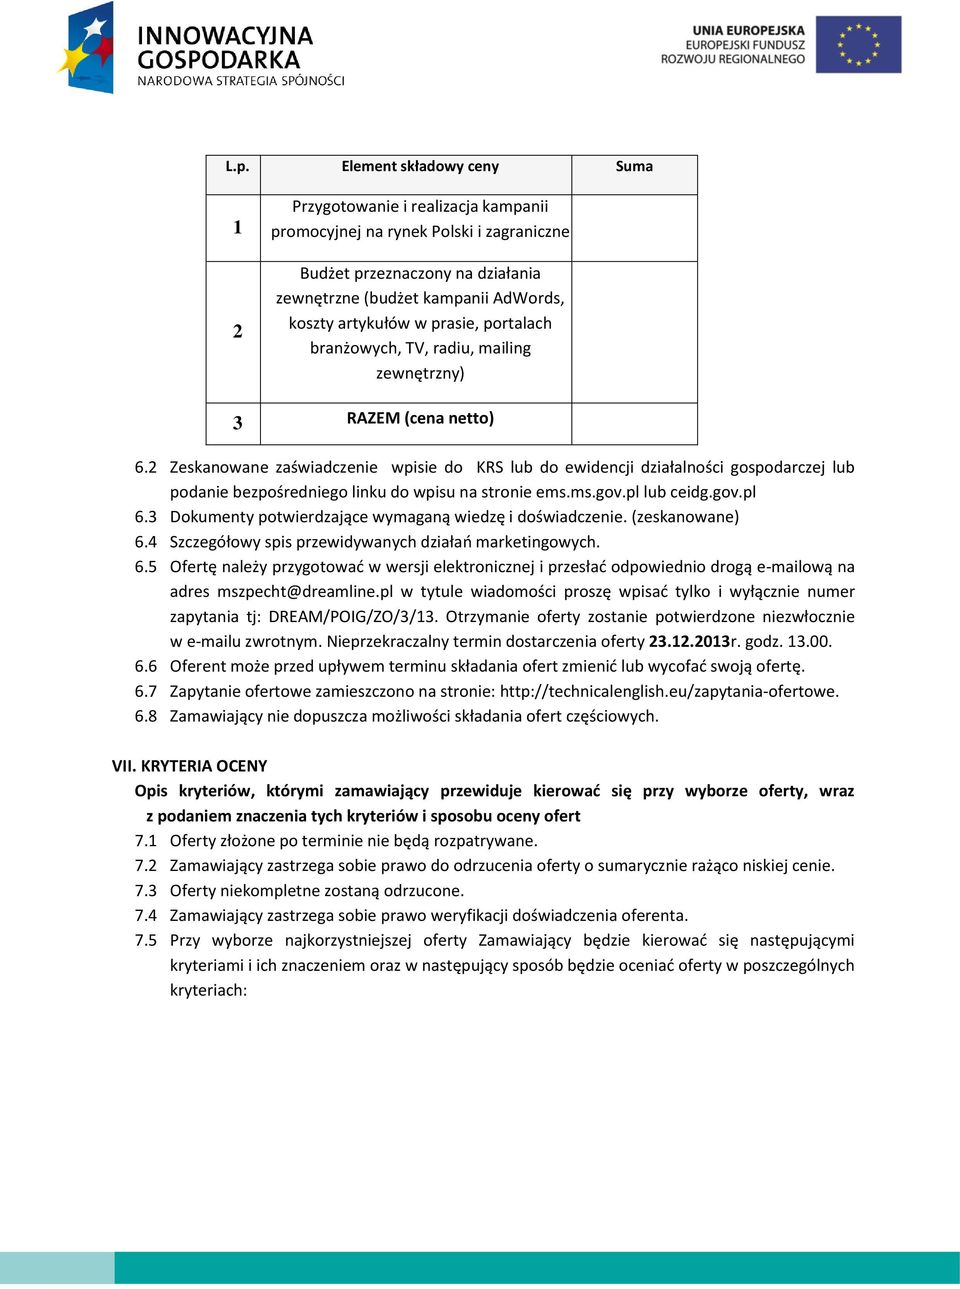 2 Zeskanowane zaświadczenie wpisie do KRS lub do ewidencji działalności gospodarczej lub podanie bezpośredniego linku do wpisu na stronie ems.ms.gov.pl lub ceidg.gov.pl 6.